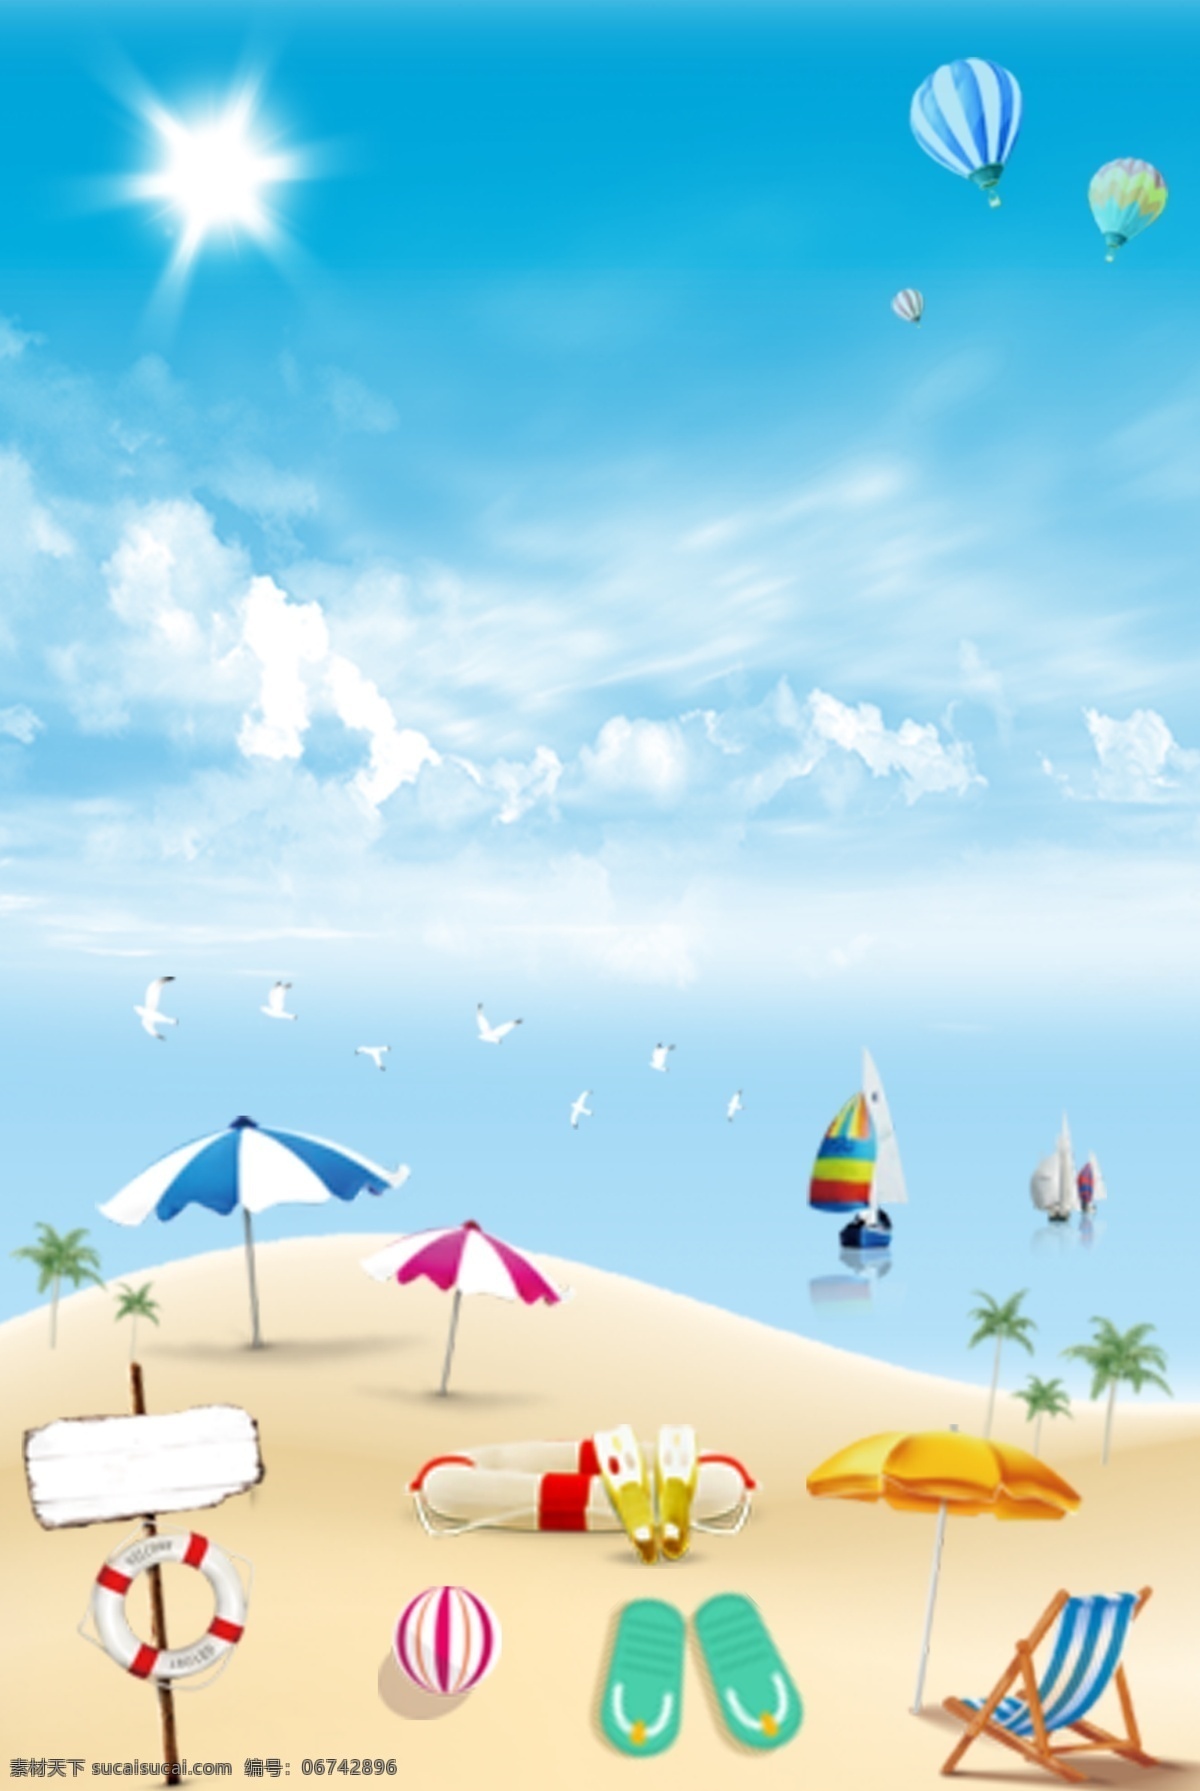 夏天 海边 沙滩 海报 背景 海边旅行 沙滩排球 氢气球 蓝天白云 小清新 海报背景 psd分层